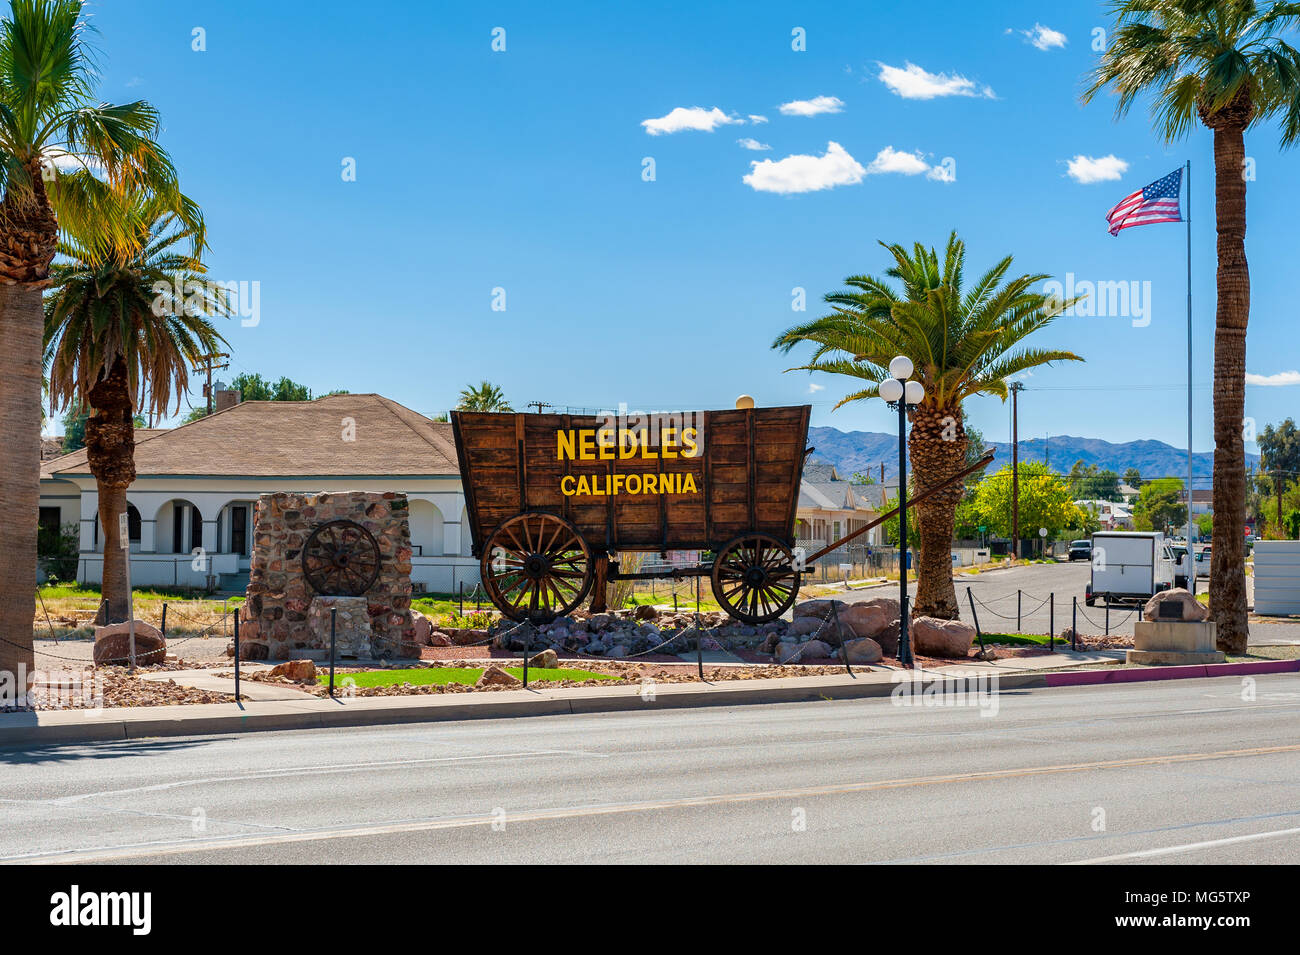 Nadeln ist eine Stadt im San Bernardino County, Kalifornien, USA. Es liegt in der Nähe der Grenze von Arizona und Nevada und hat eine Bevölkerung von rund 4.800. Stockfoto